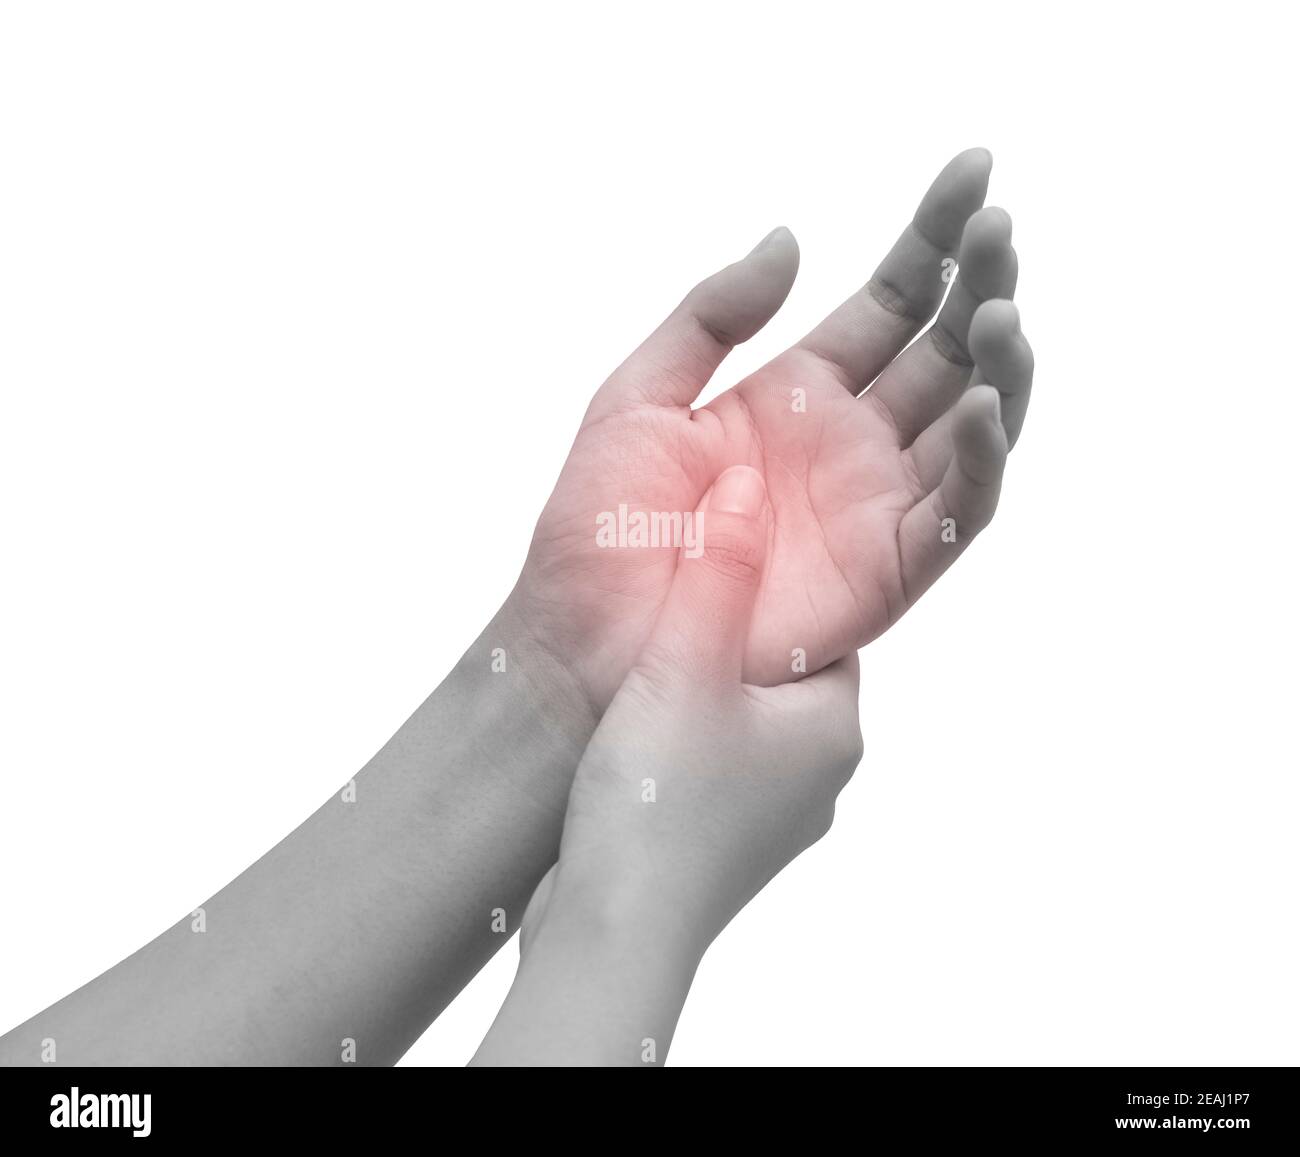 Bild von Handschmerzen. Schwarz-weiße weibliche Hand mit rot markierten Schmerzpunkten Stockfoto